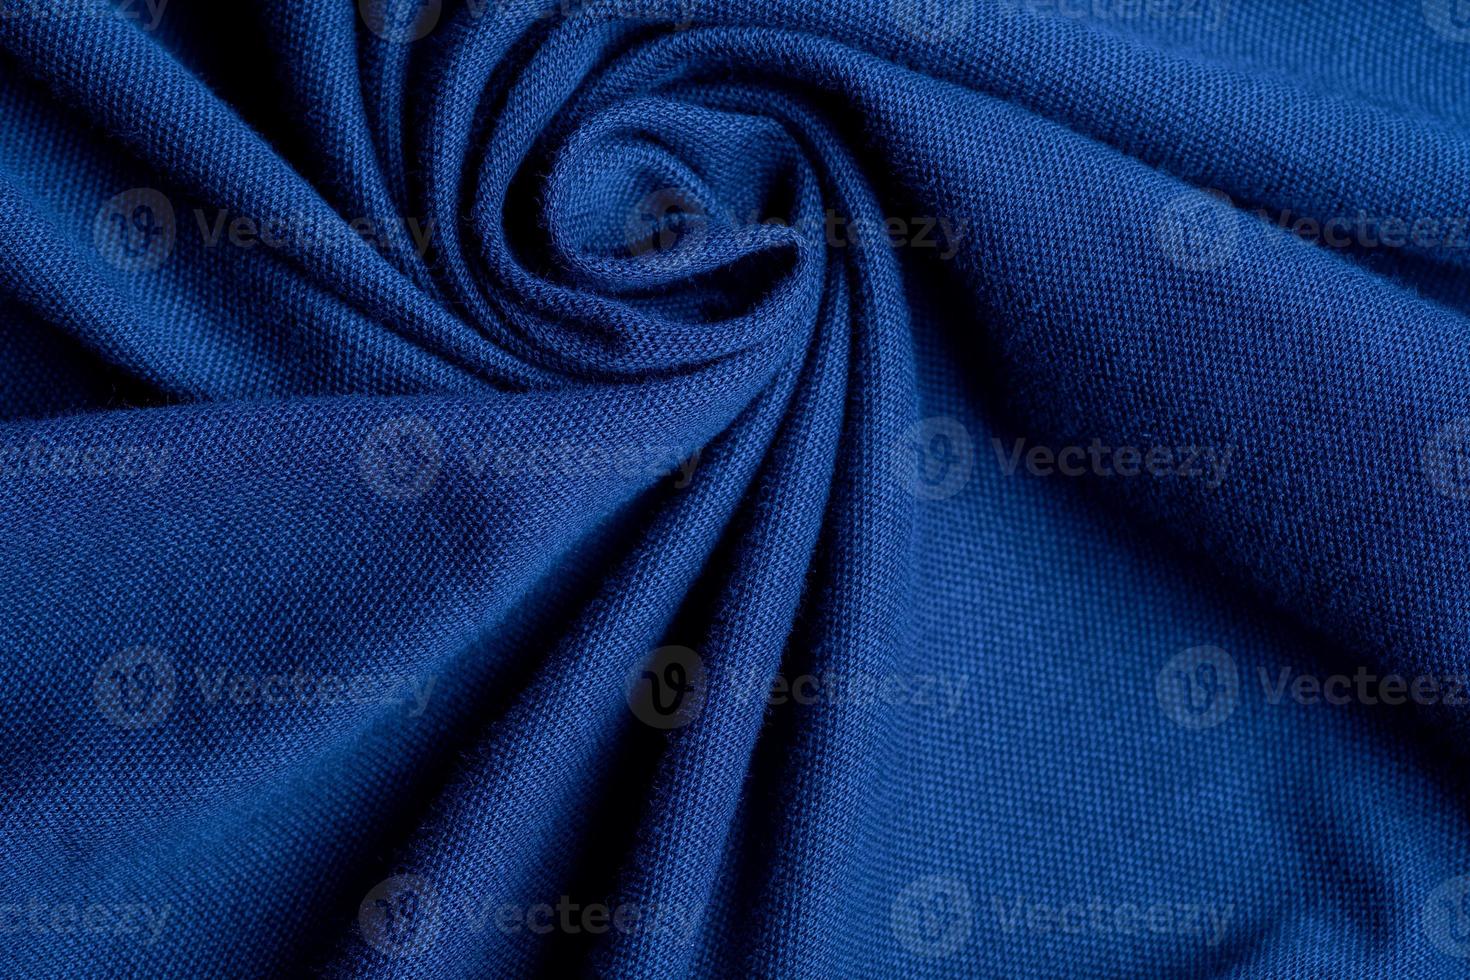 blauwe stof textuur achtergrond, abstract, close-up textuur van doek foto